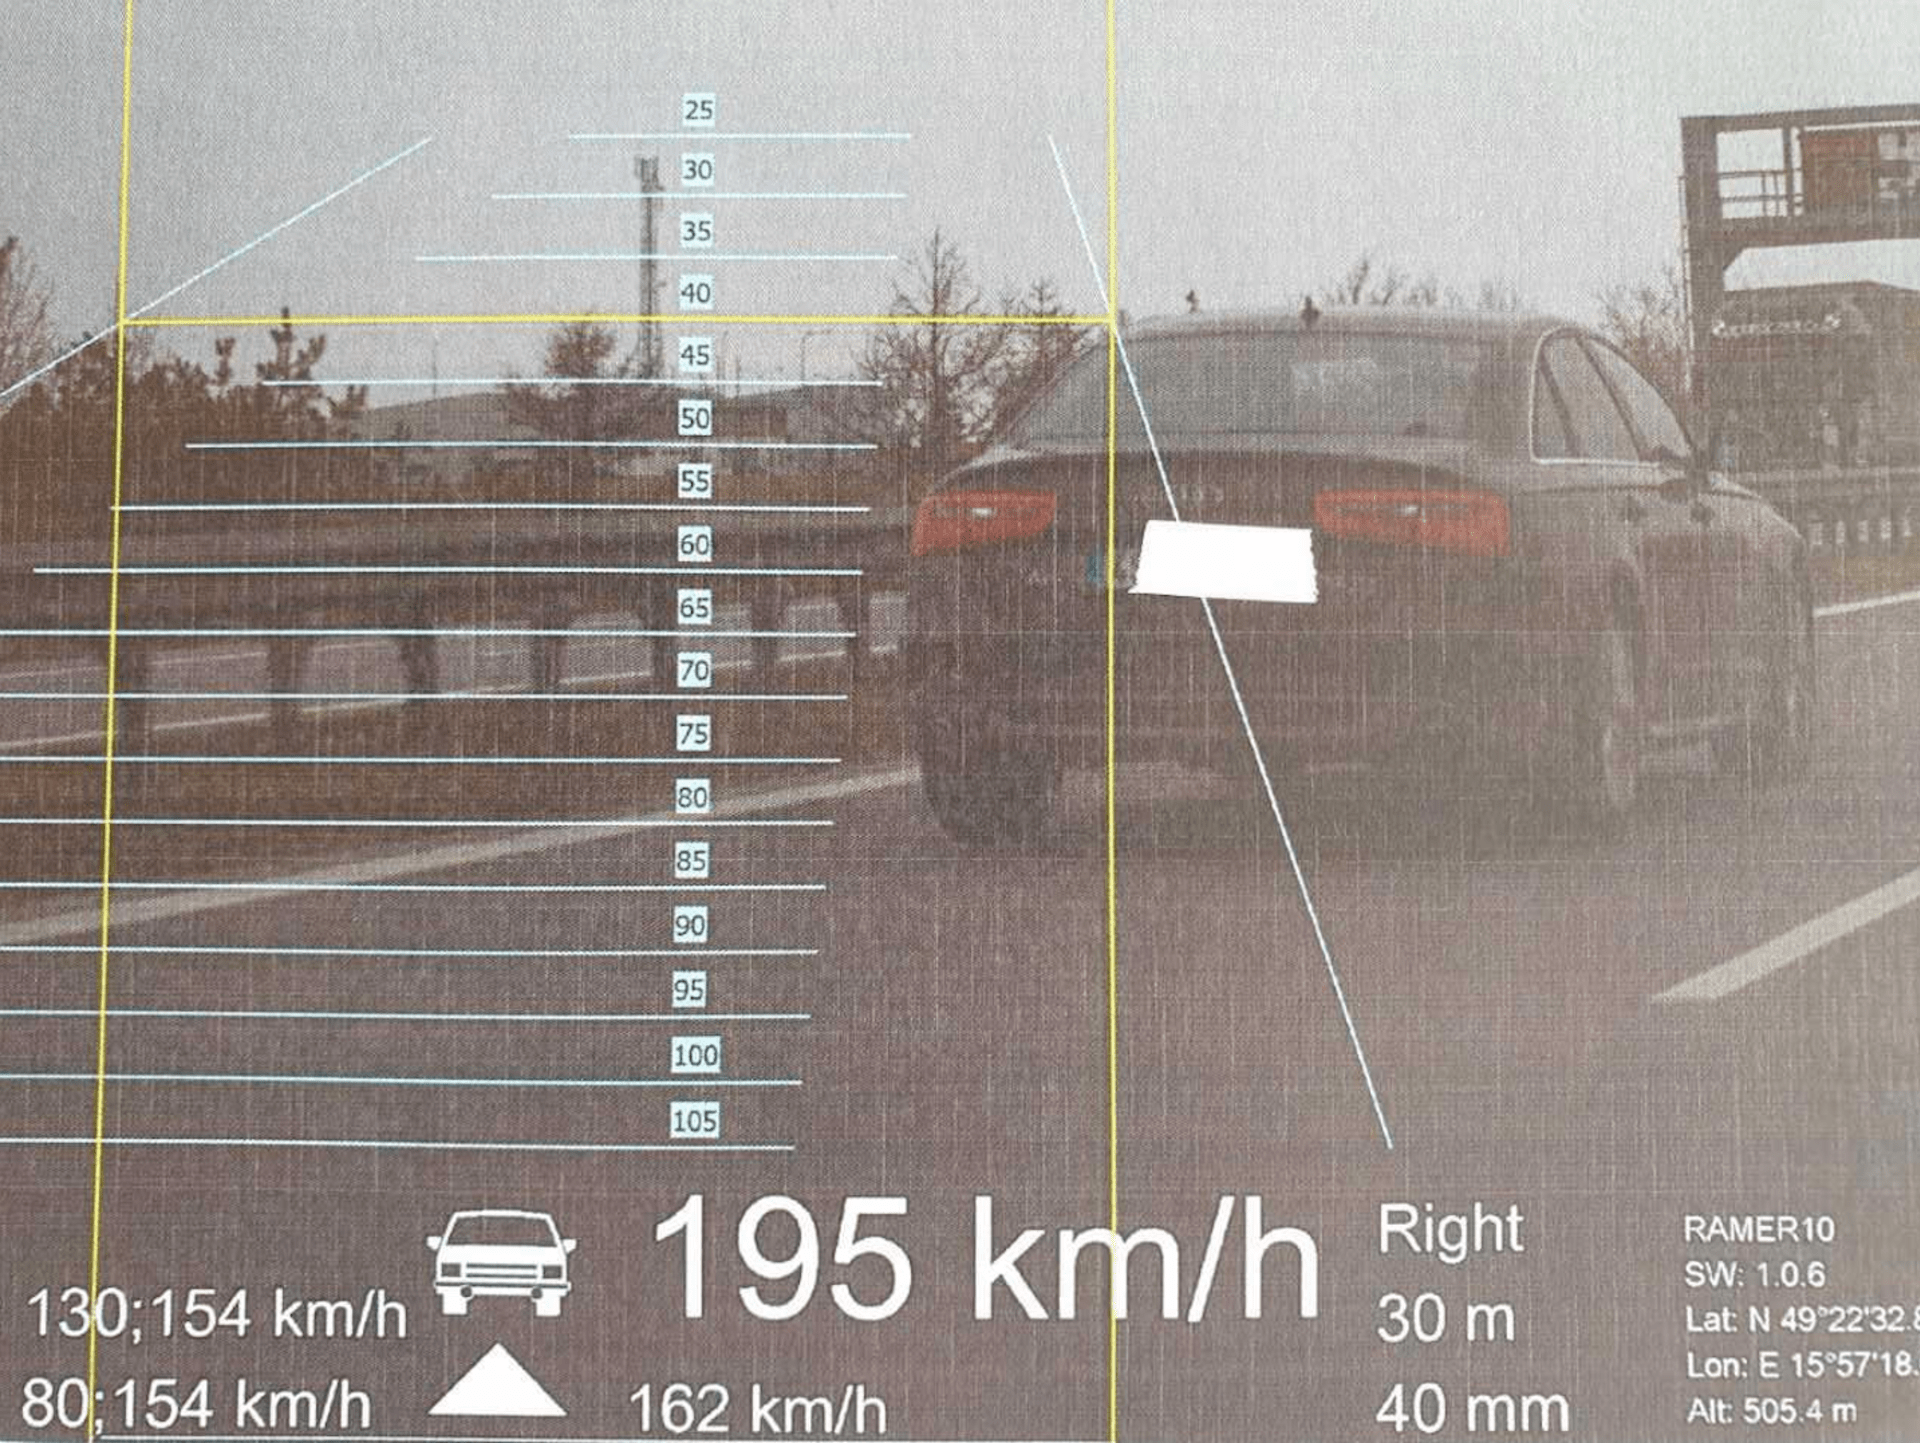 Audi A6 jelo po dálnici rychlostí 195 km/h.